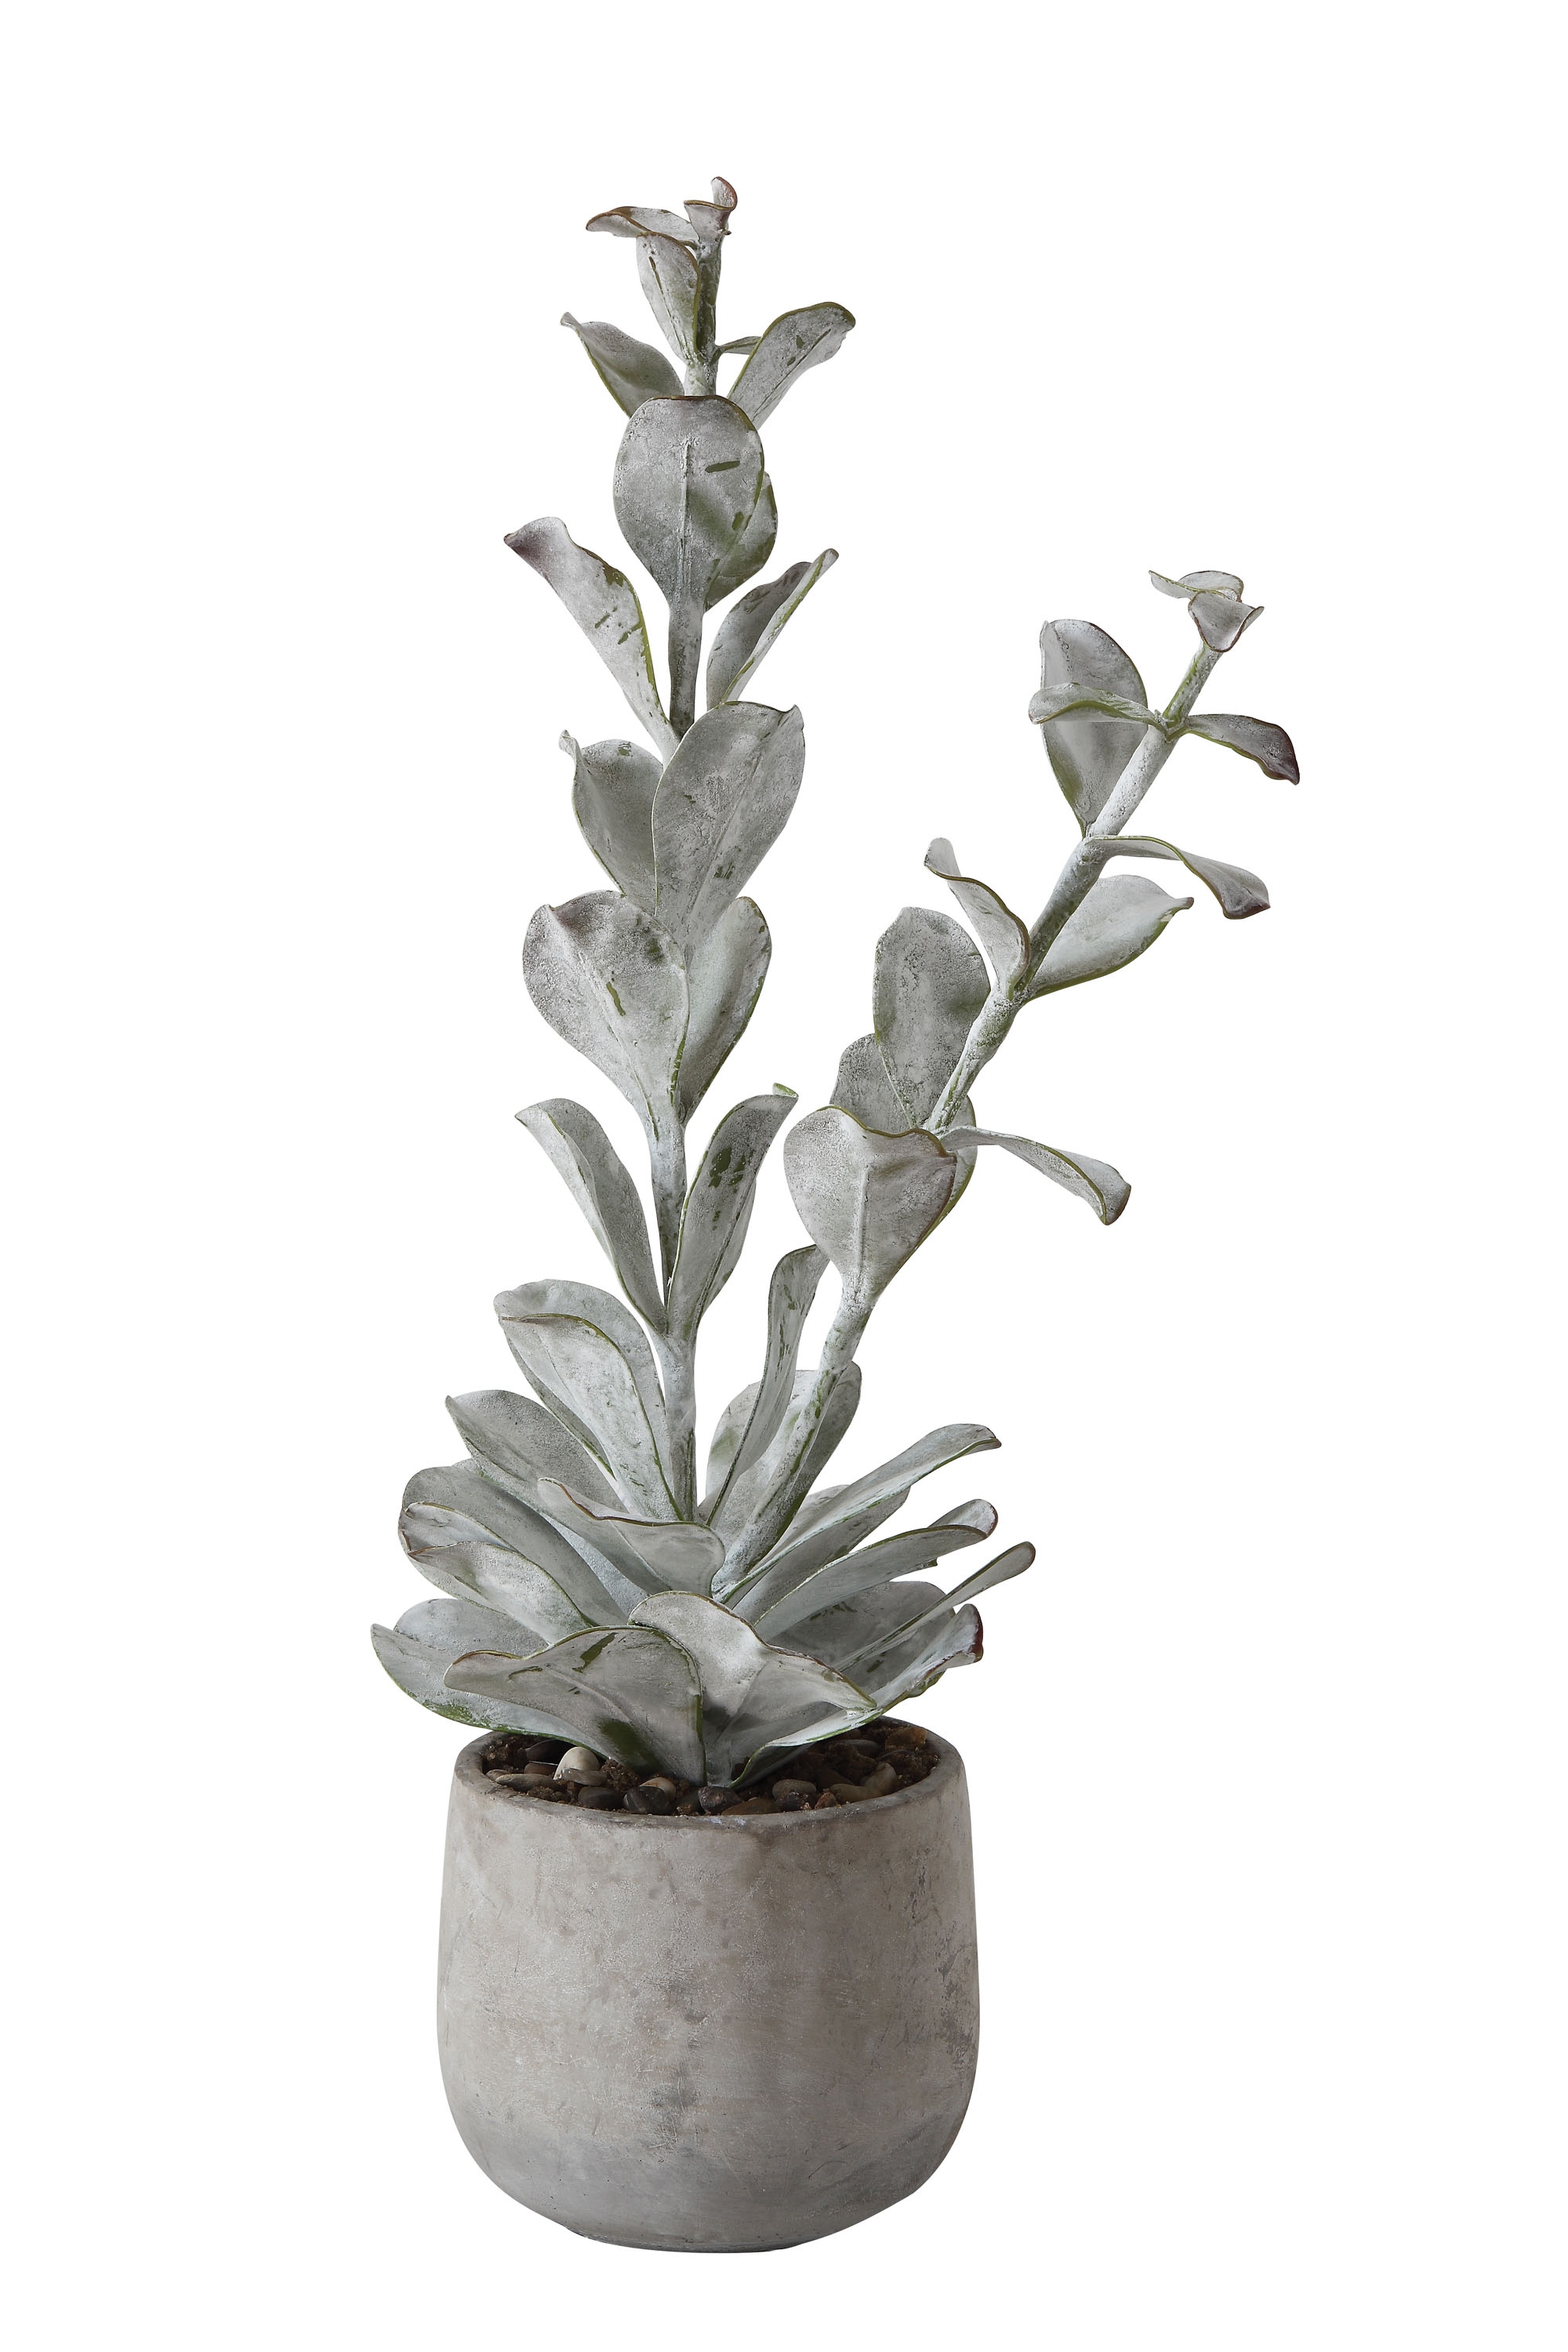 Faux Succulent in Cement Pot - Image 0